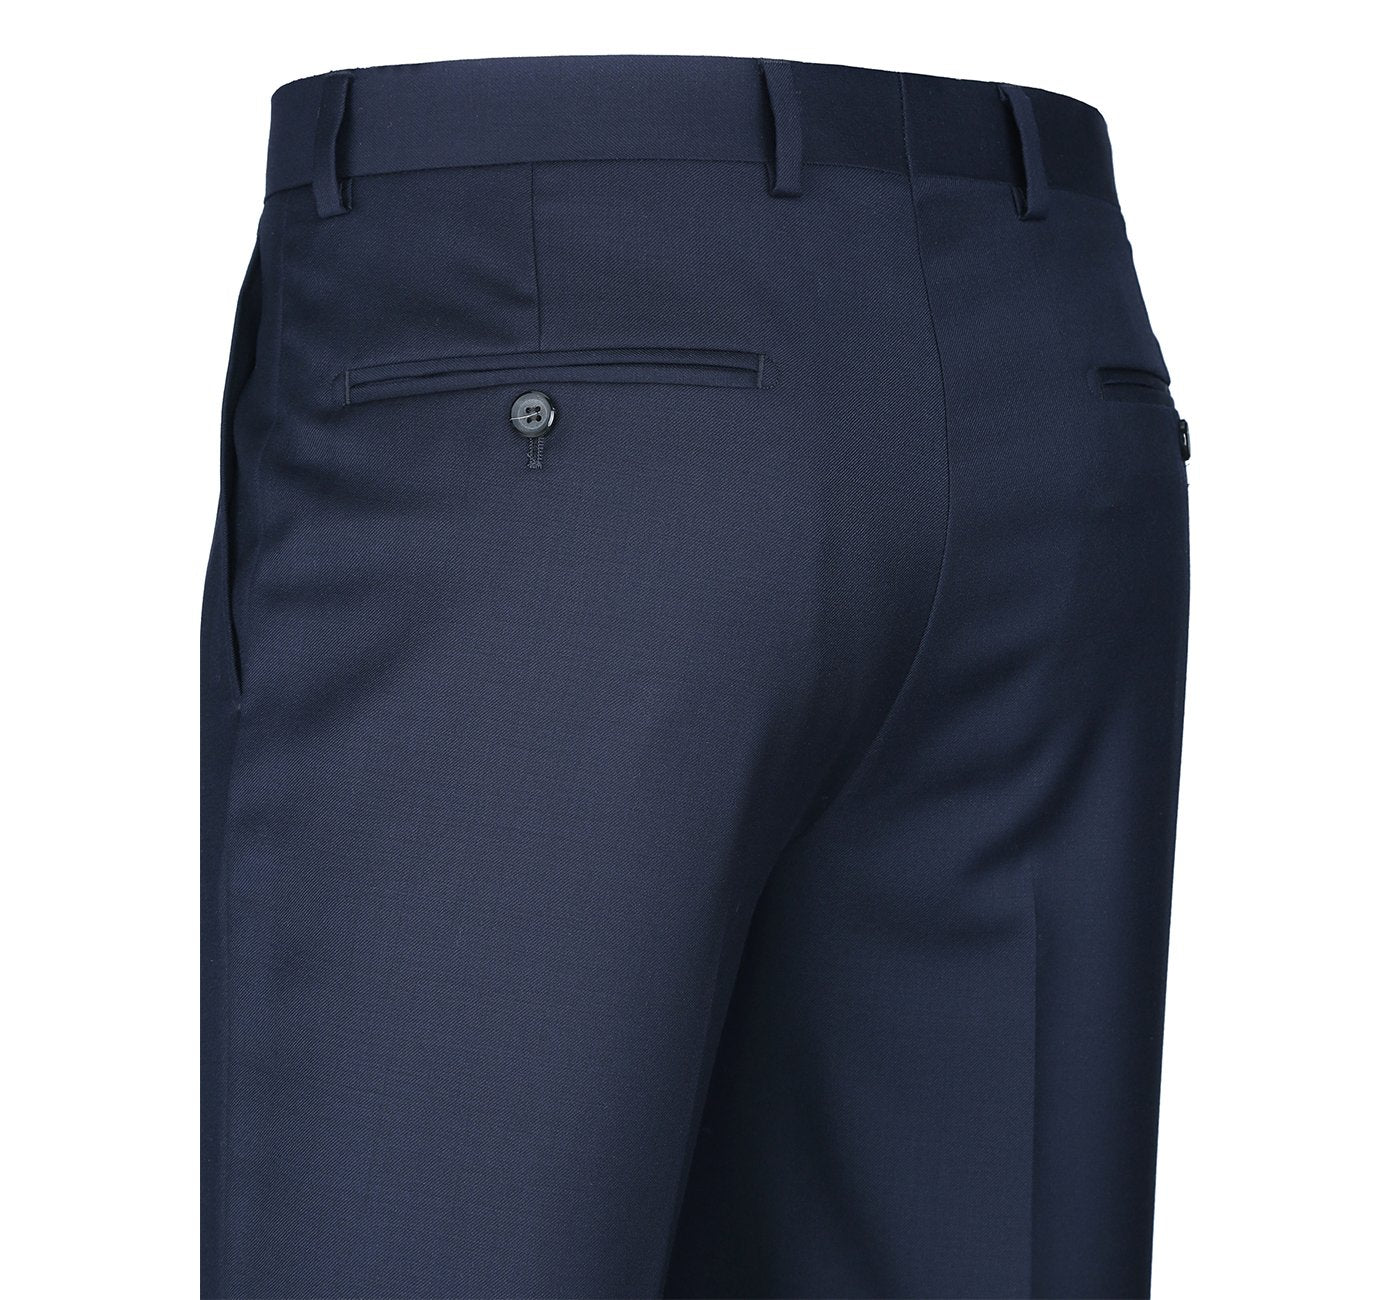 508-19 Men's Blue Classic Fit Flat Front Wool Suit Pant